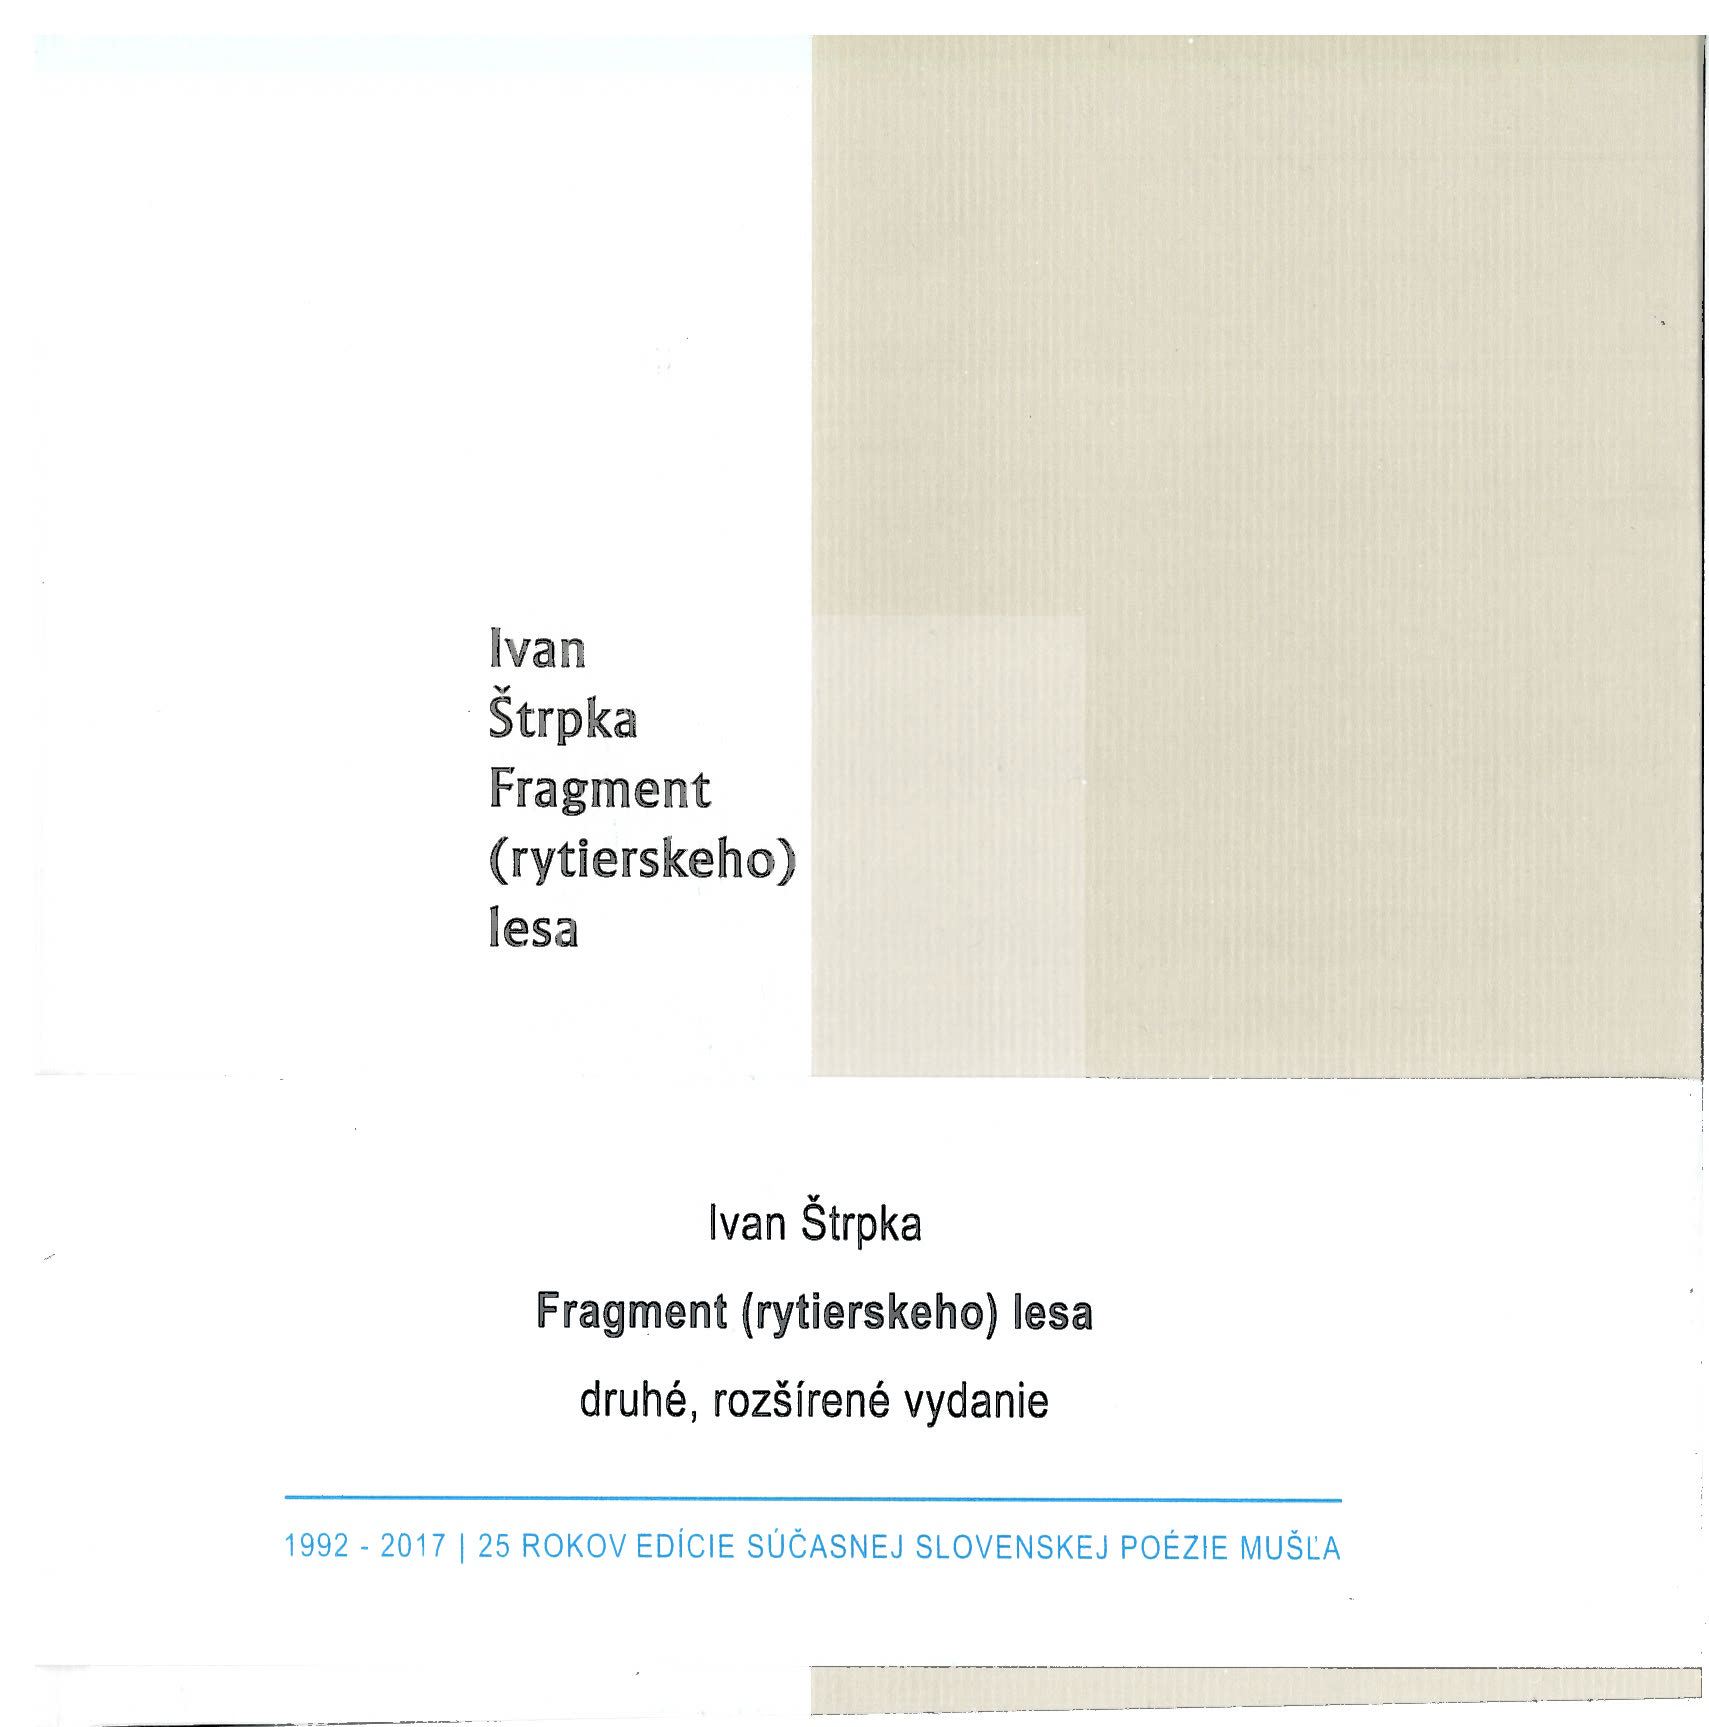 Fragment (rytierskeho) lesa - druhé, rozšírené vydanie